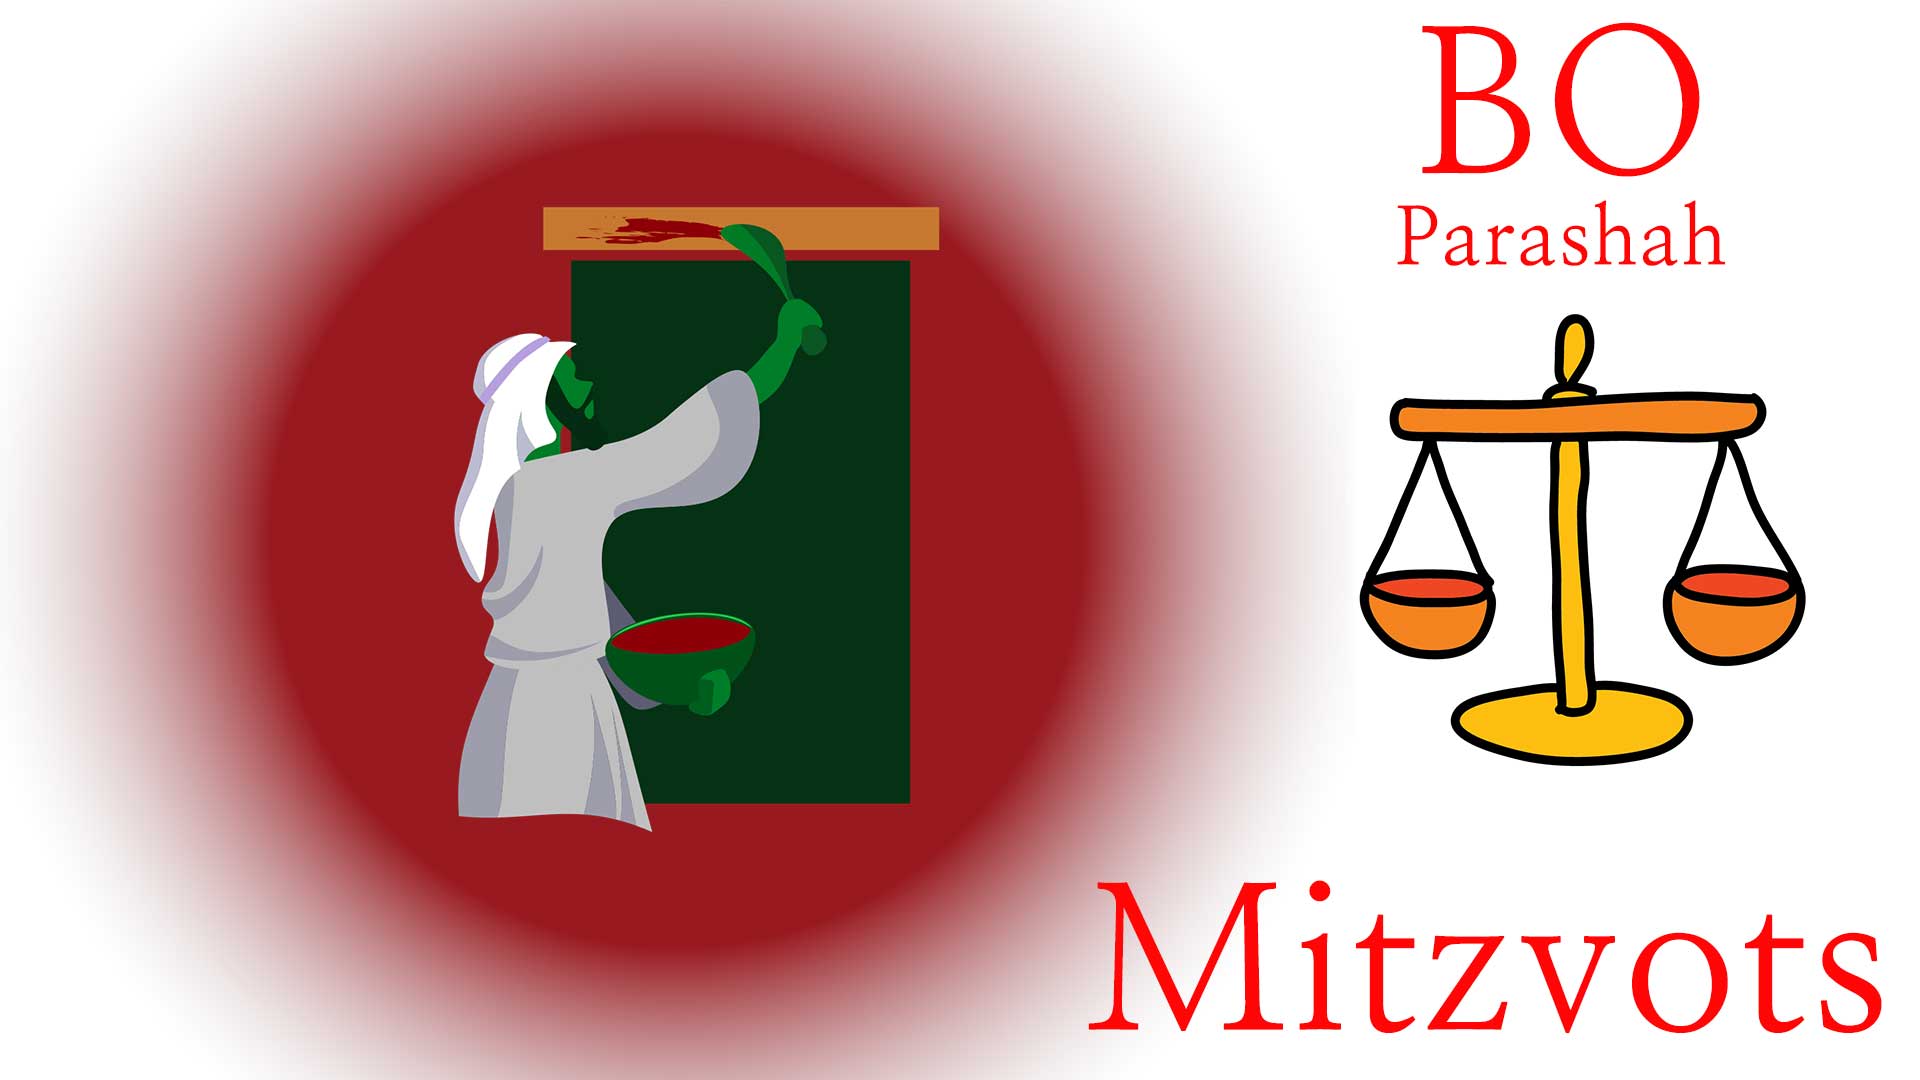 Bo-Mitzvots-2